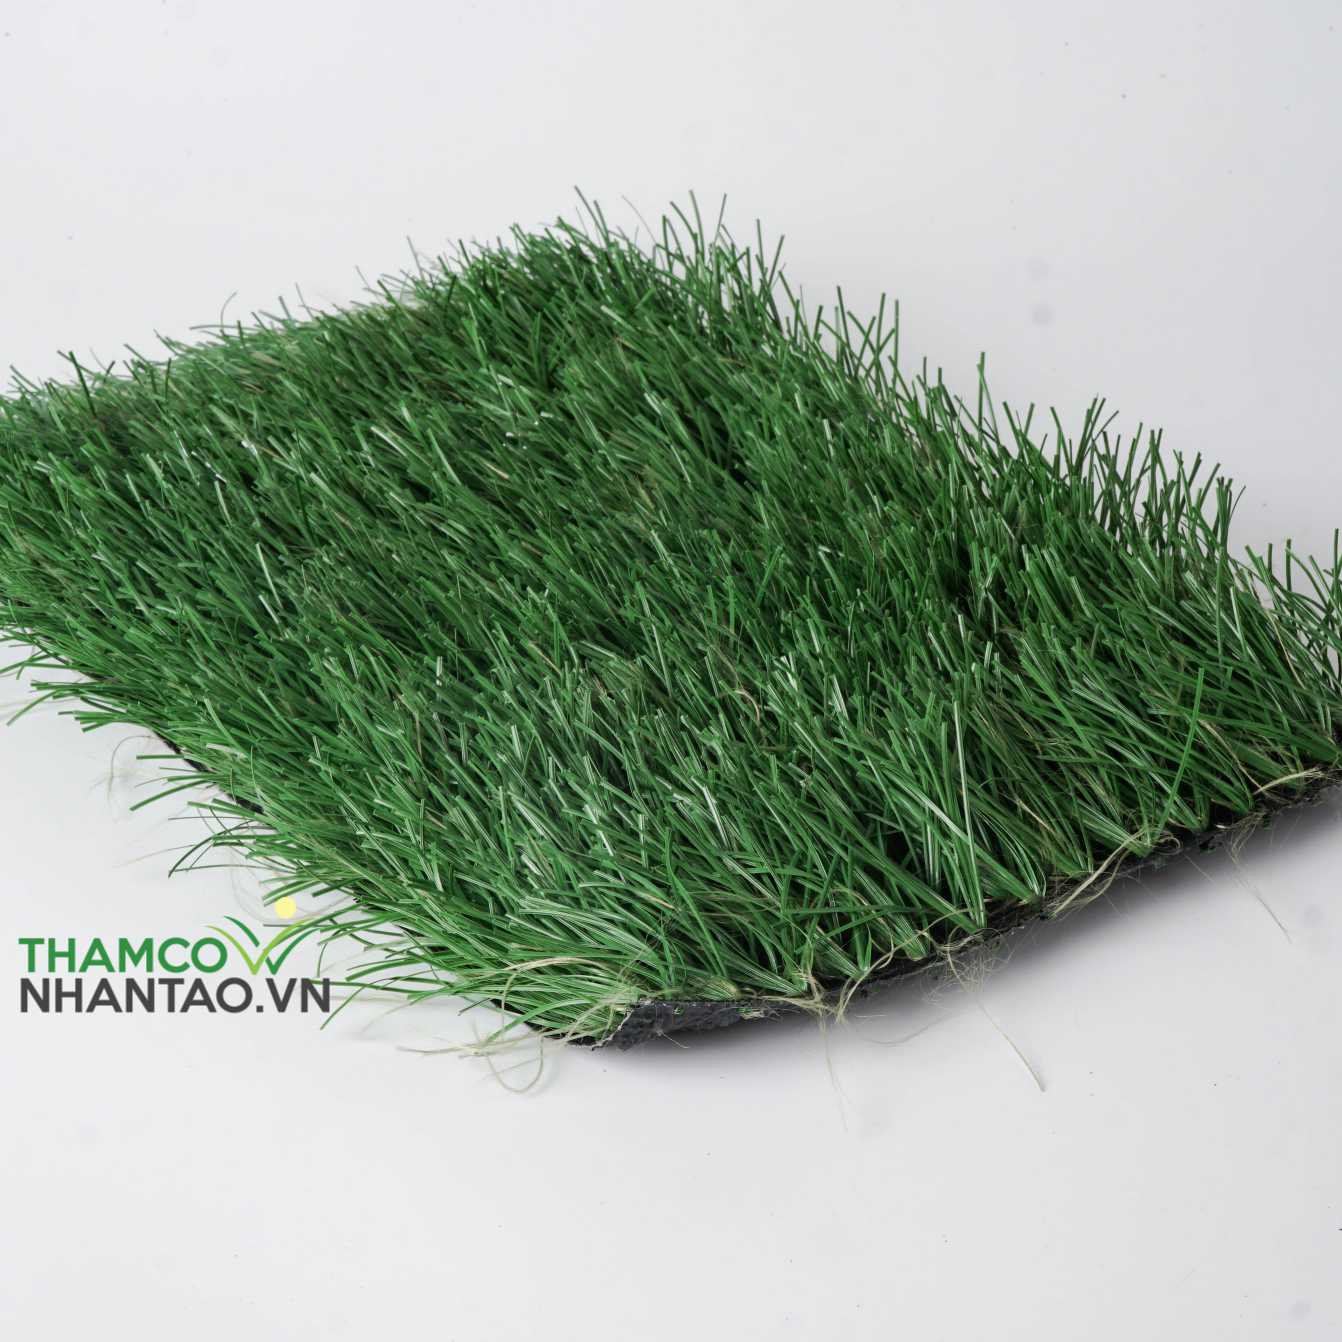 Lưu ý gì khi mua thảm cỏ nhân tạo sân bóng? 1